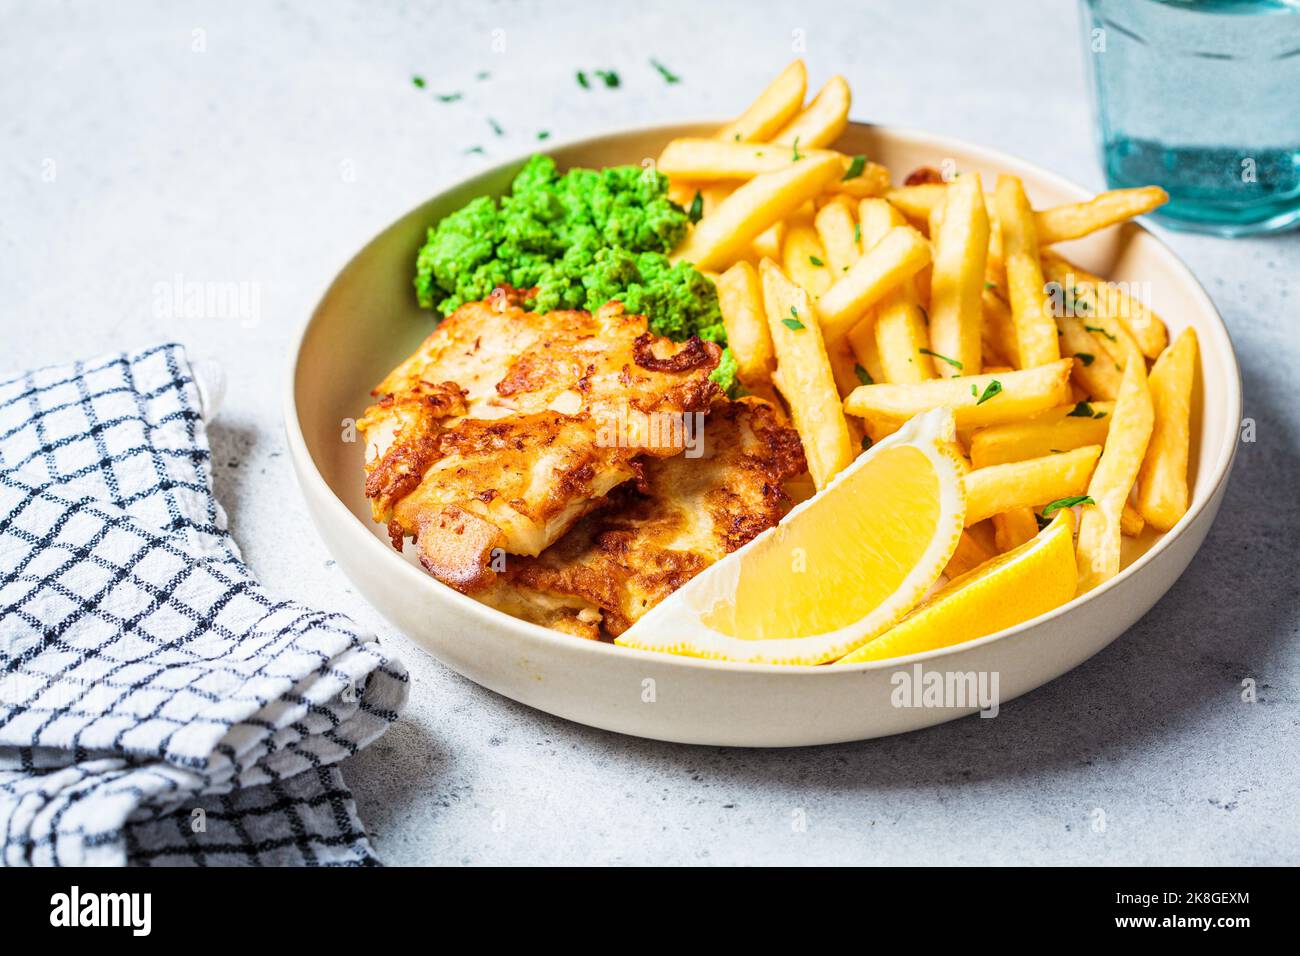 Fisch und Pommes. Kabeljau-Fisch im Teig mit pommes frites und pürierten grünen Erbsen auf weißem Teller, grauer Hintergrund. Englisches Essenskonzept. Stockfoto